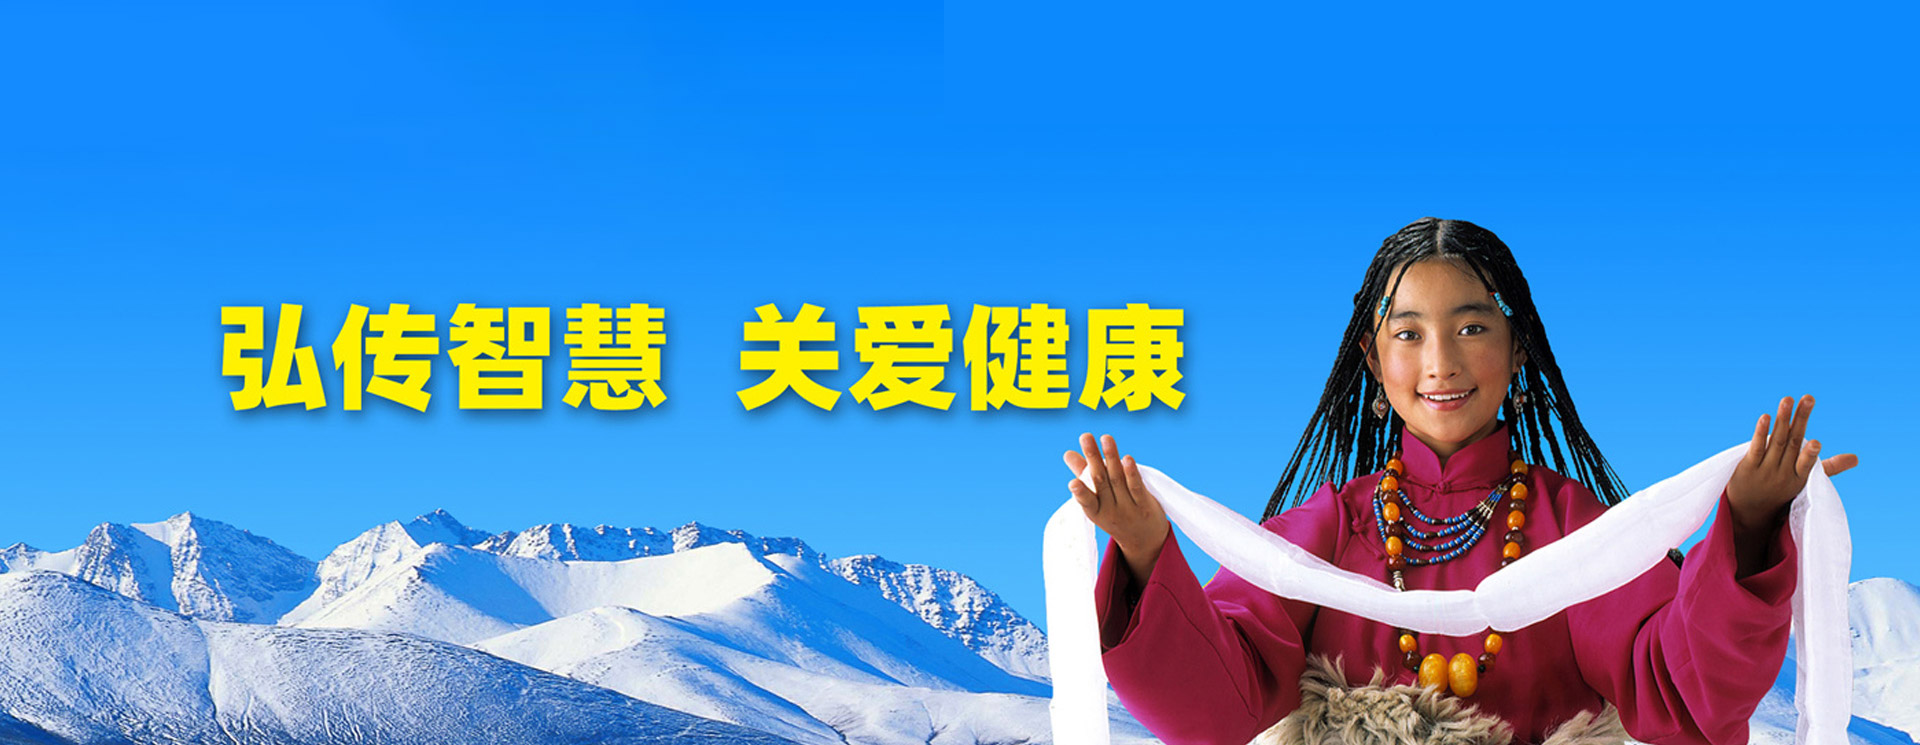 西藏火狐娱乐藏药股份有限公司（简称火狐娱乐藏药）主要从事新型藏药的研发、生产和销售，现拥有GMP药厂、GSP营销公司等全资及控股子公司16家。